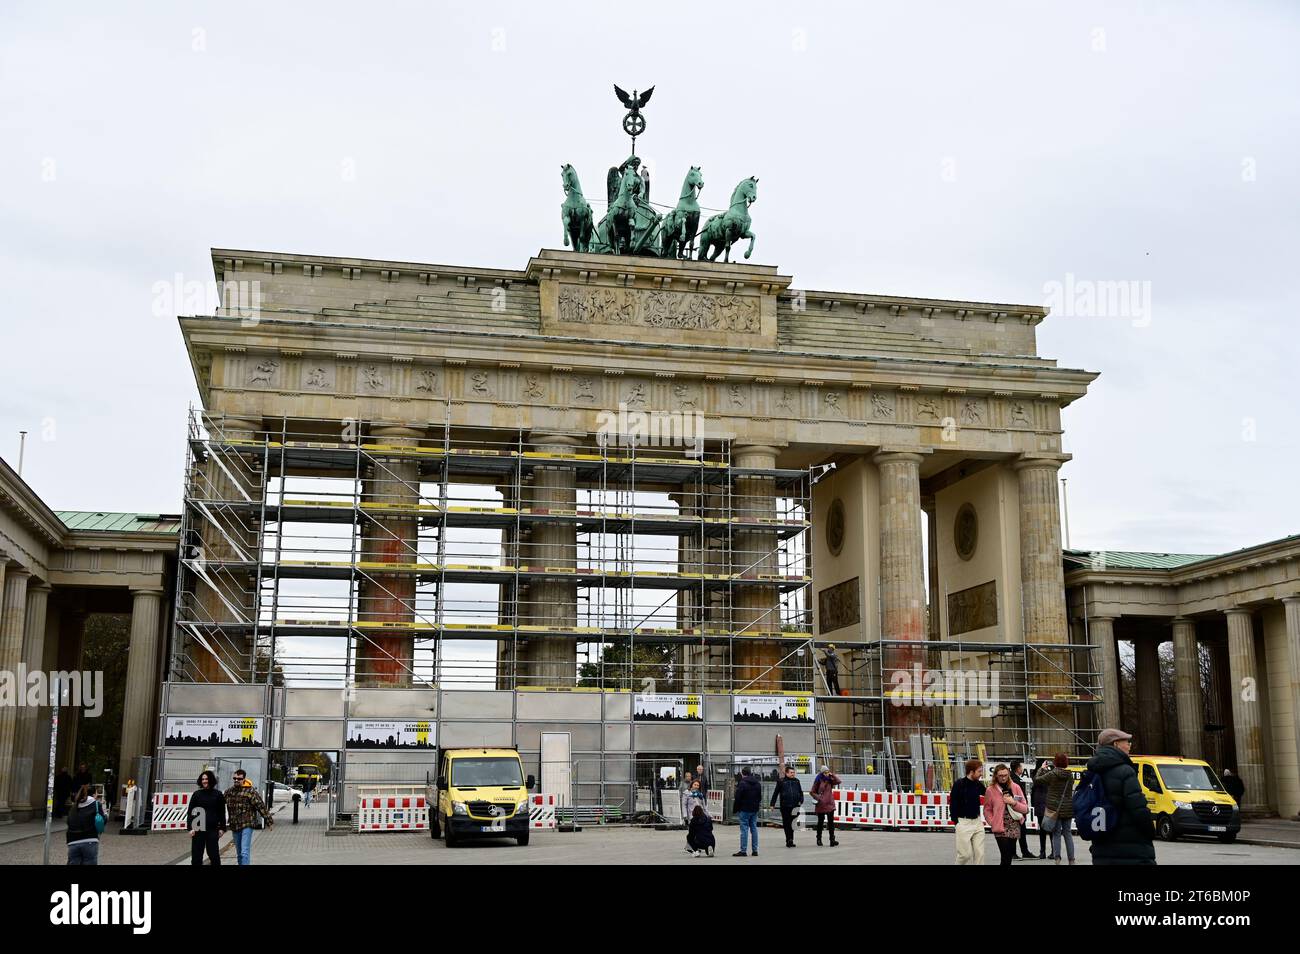 Weitere Reinigungsarbeiten nötig: Brandenburger Tor in Berlin nach Farbattacke wieder eingerüstet. Da die erste Reinigung am Brandenburger Tor nach de Stock Photo